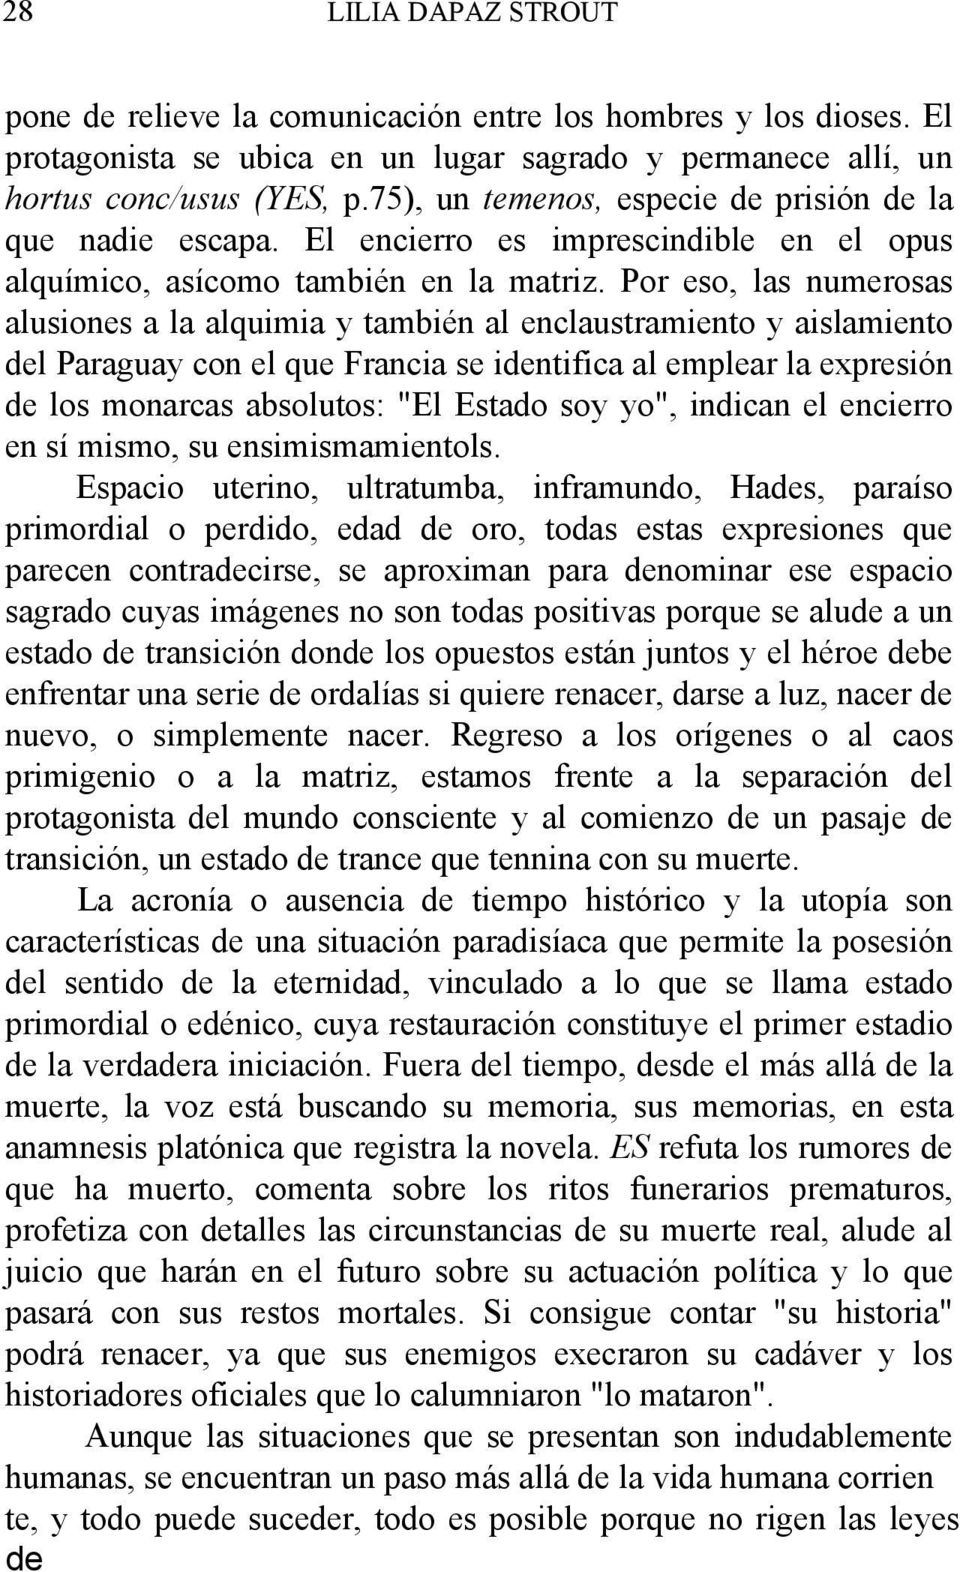 Por eso, las numerosas alusiones a la alquimia y también al enclaustramiento y aislamiento del Paraguay con el que Francia se identifica al emplear la expresión de los monarcas absolutos: "El Estado